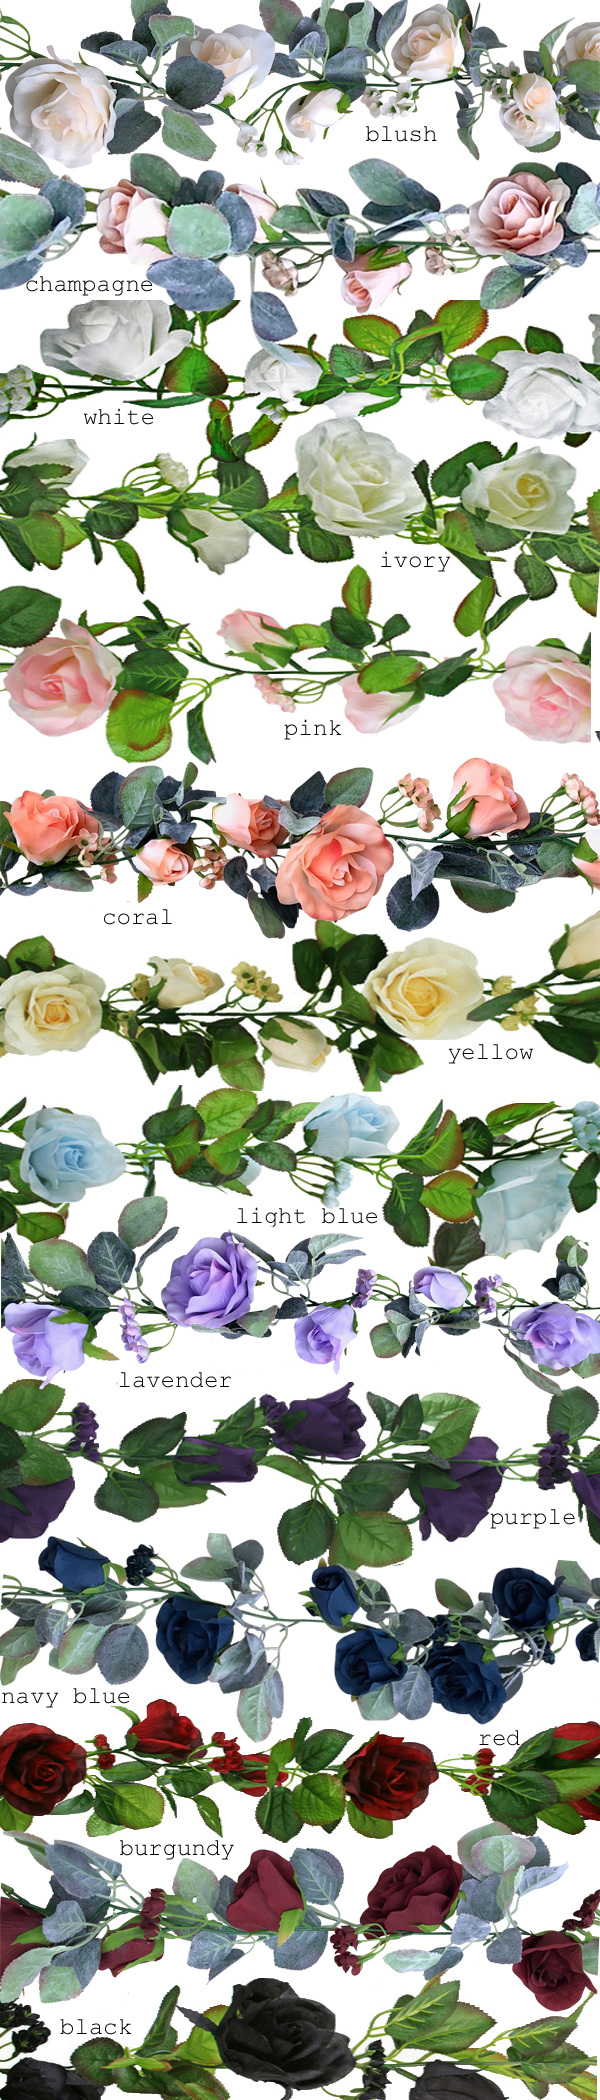 garland-rose-14-colors.jpg